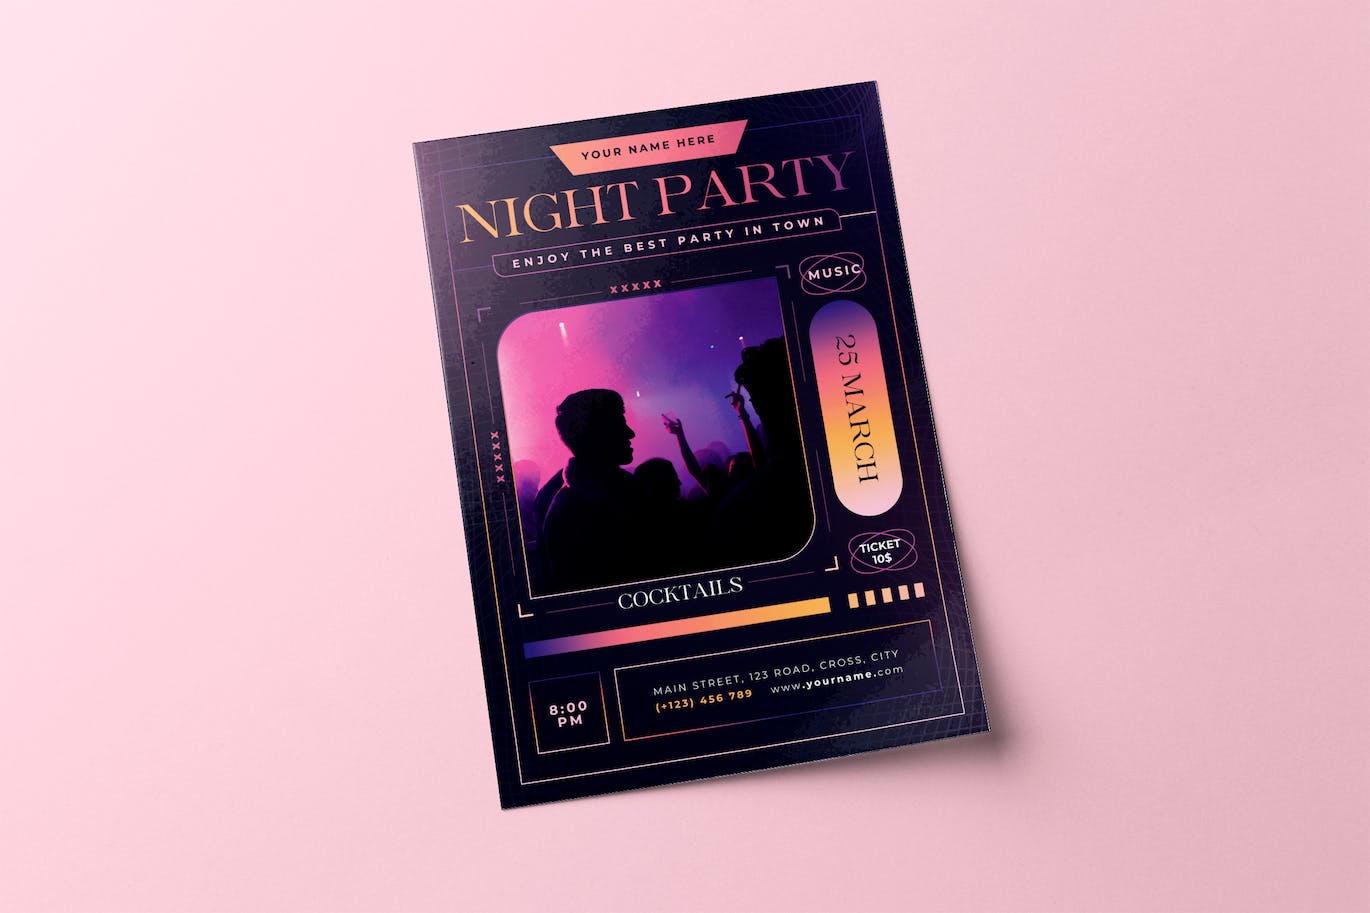 夜间酒吧派对传单设计模板 Night Party Flyer 设计素材 第1张